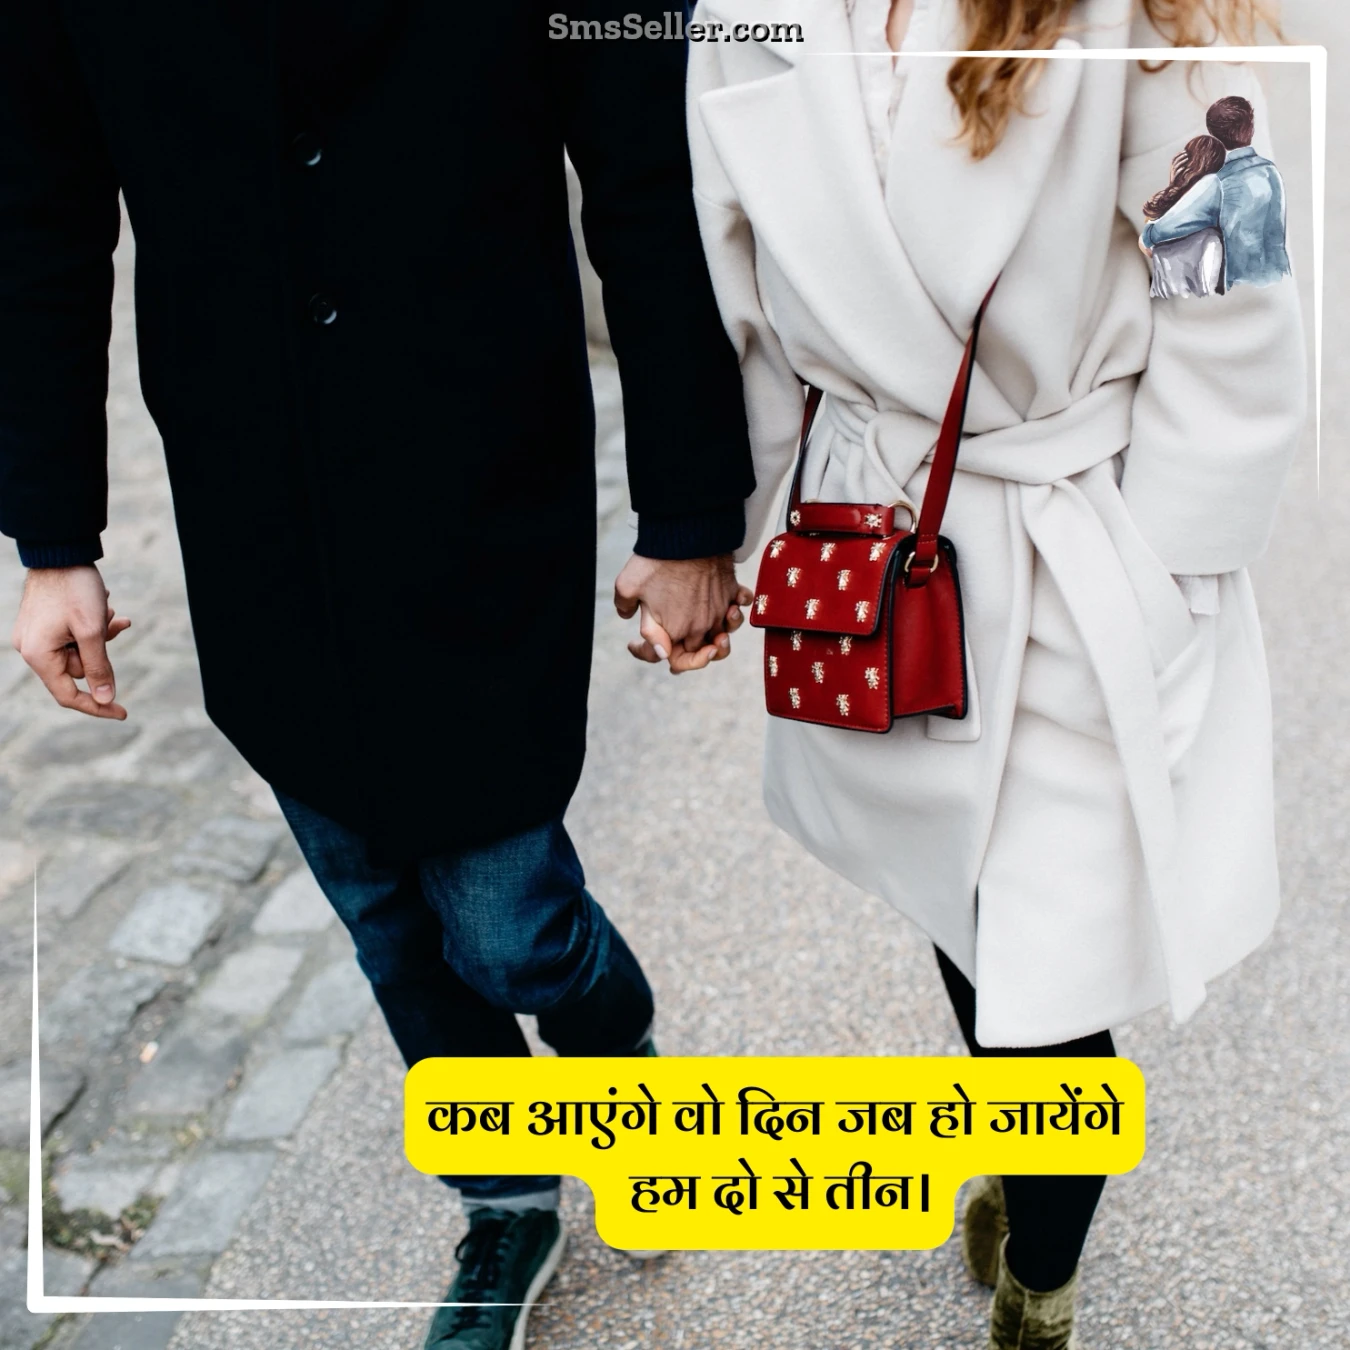 love quotes hindi kab wo din aayega tere